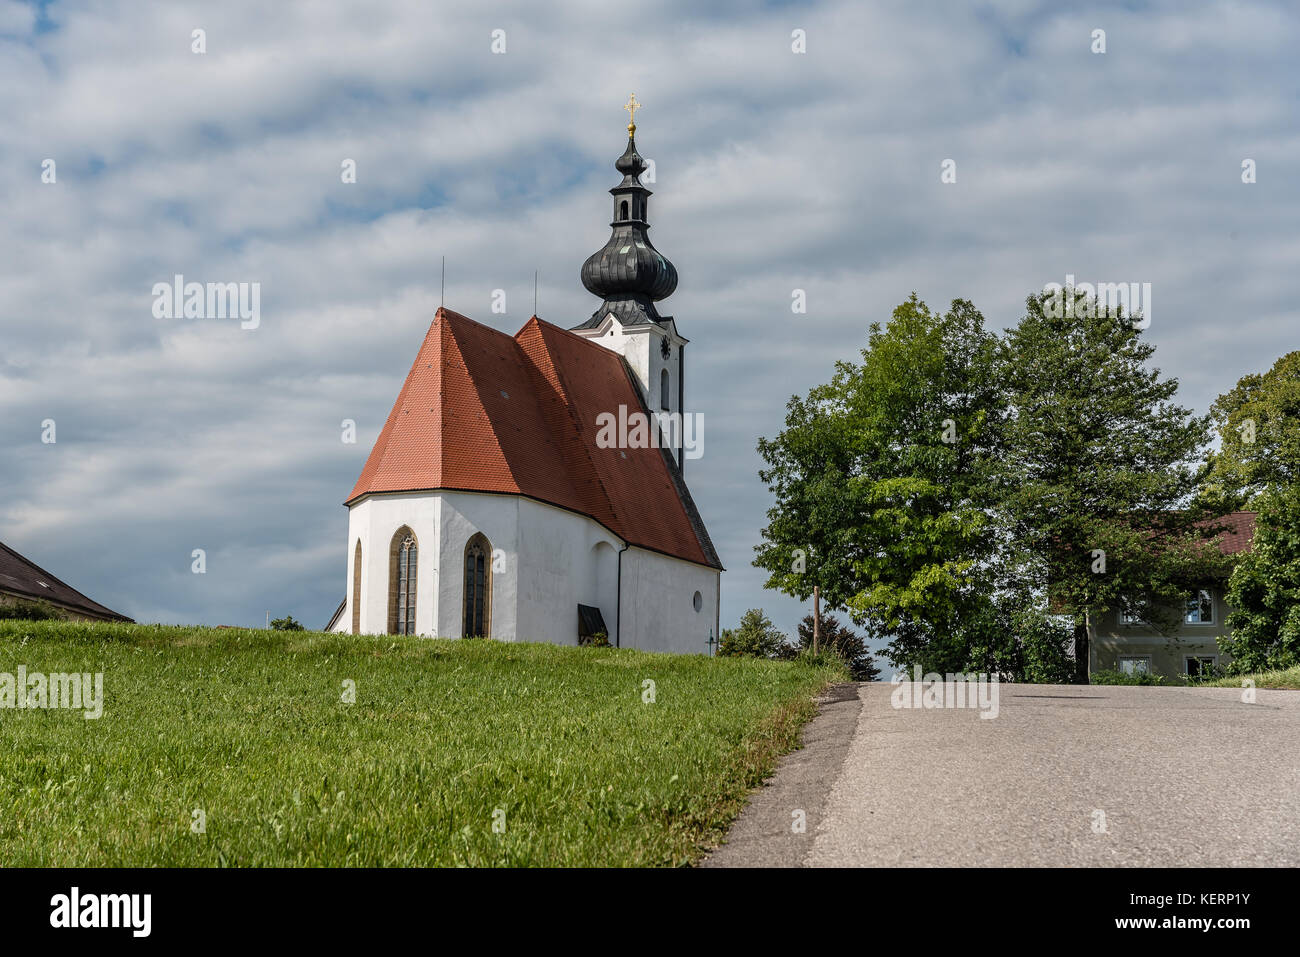 Scenic view of small white church in Austria Stock Photo